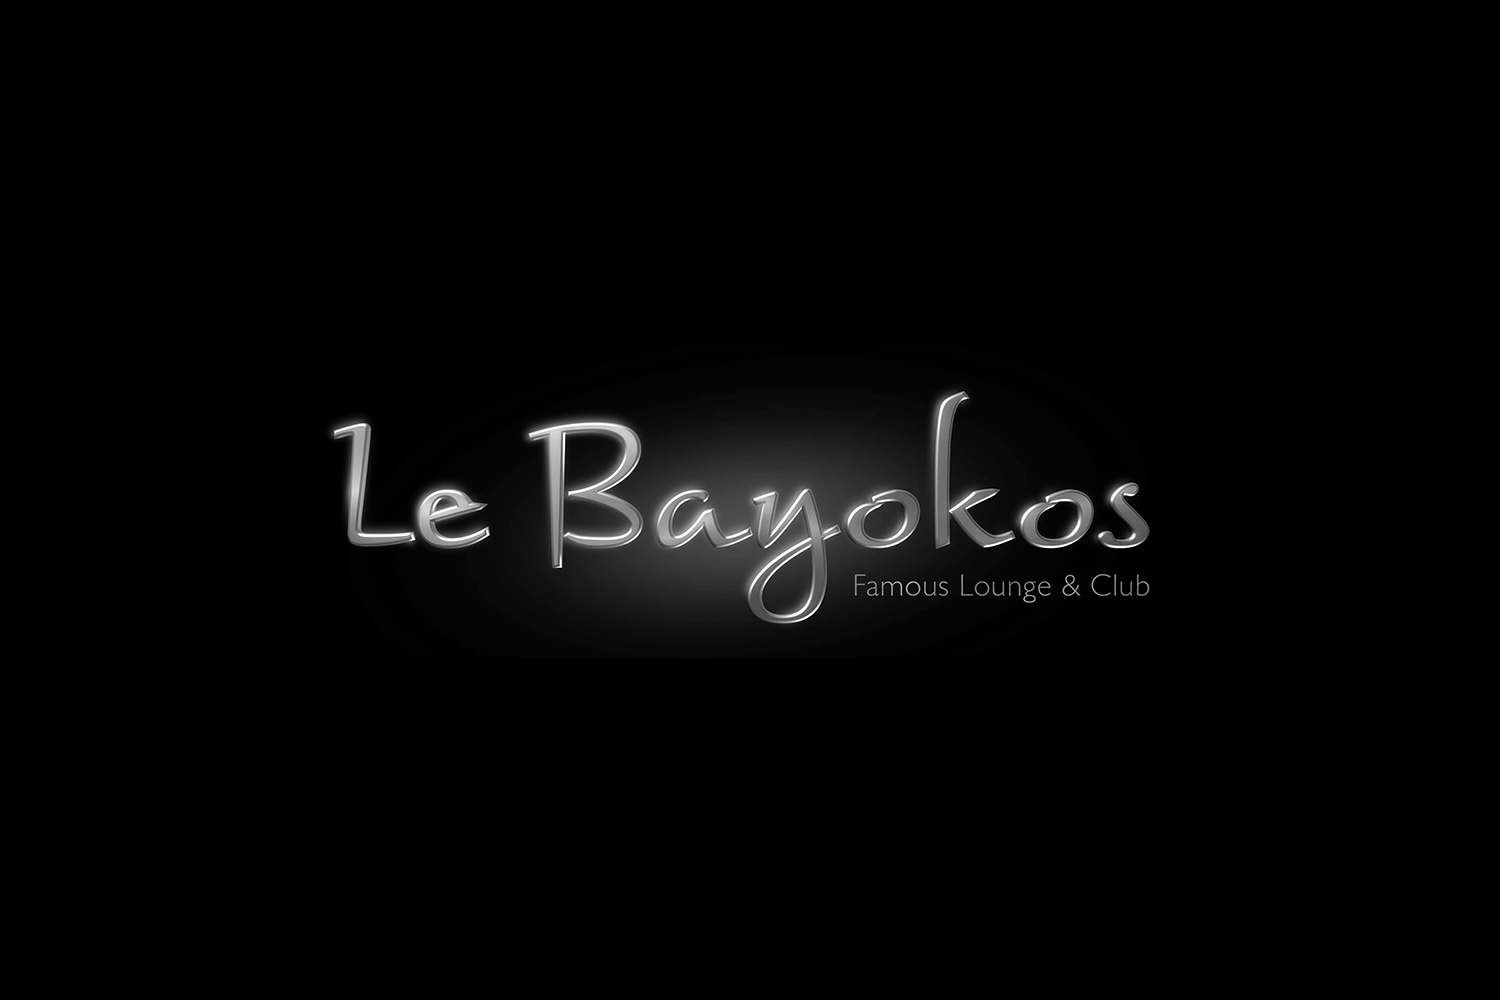 Le Bayokos